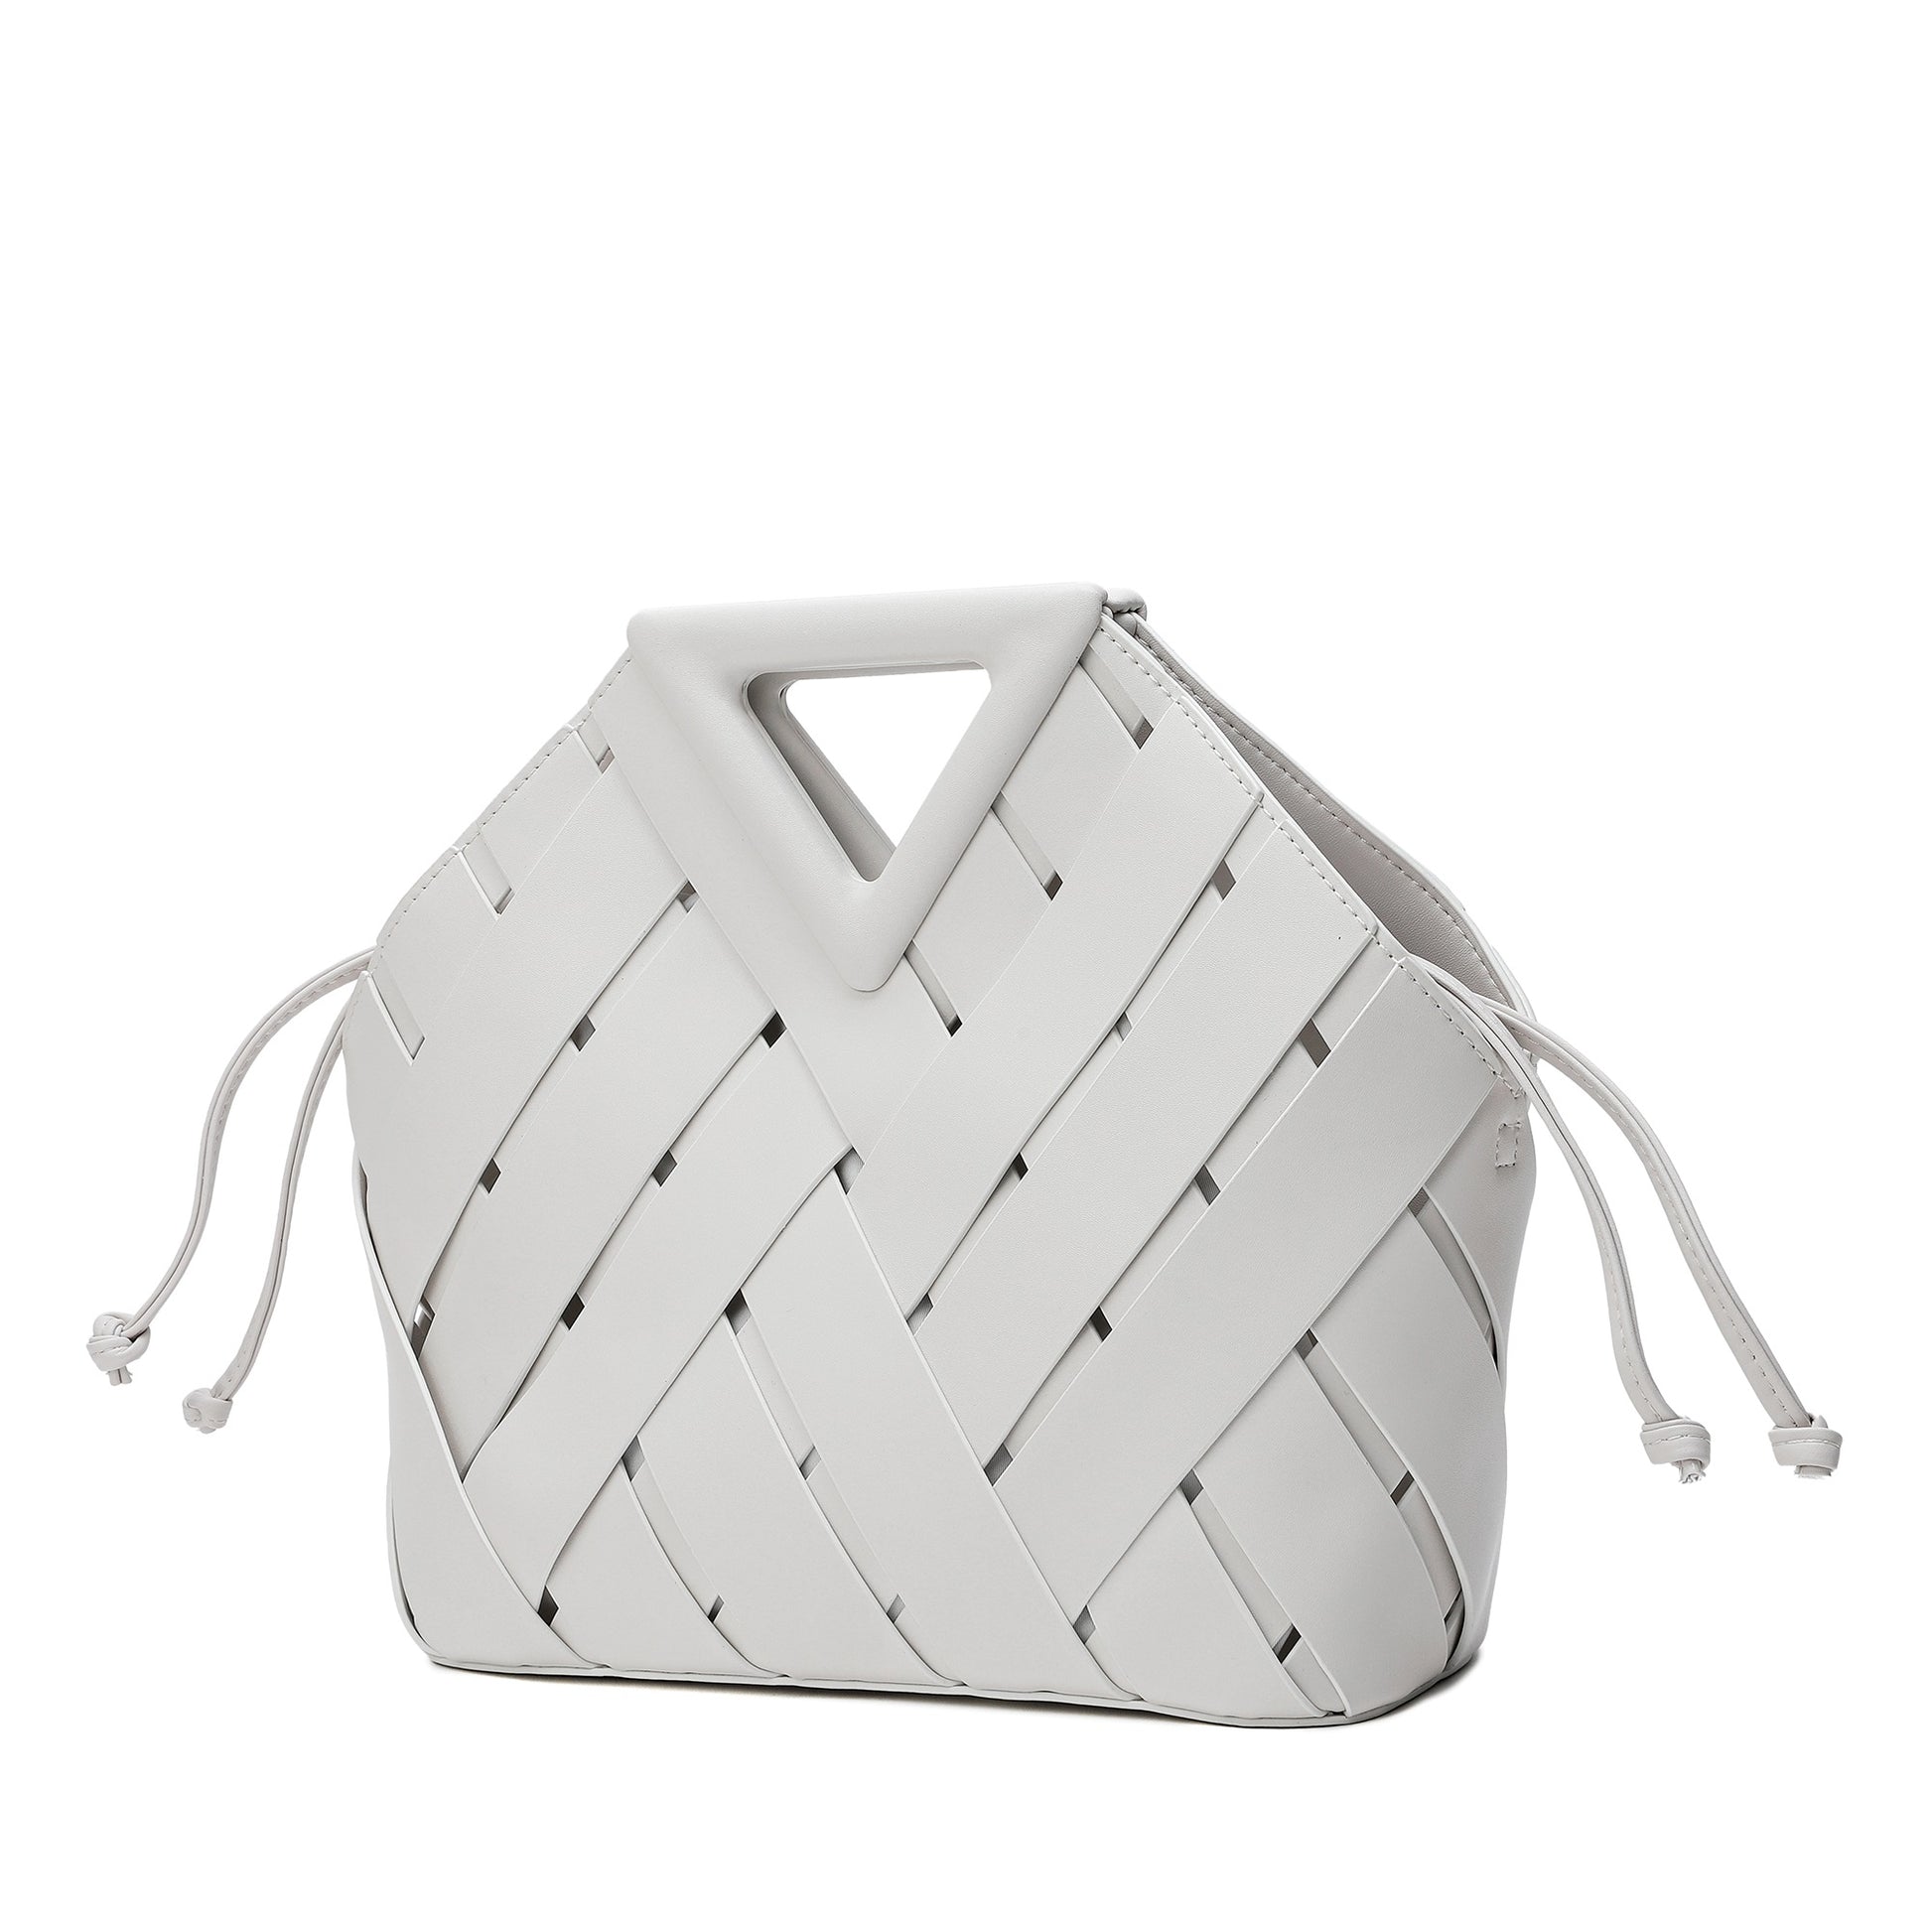 Tiffany Checkered Doorbuster Handbag